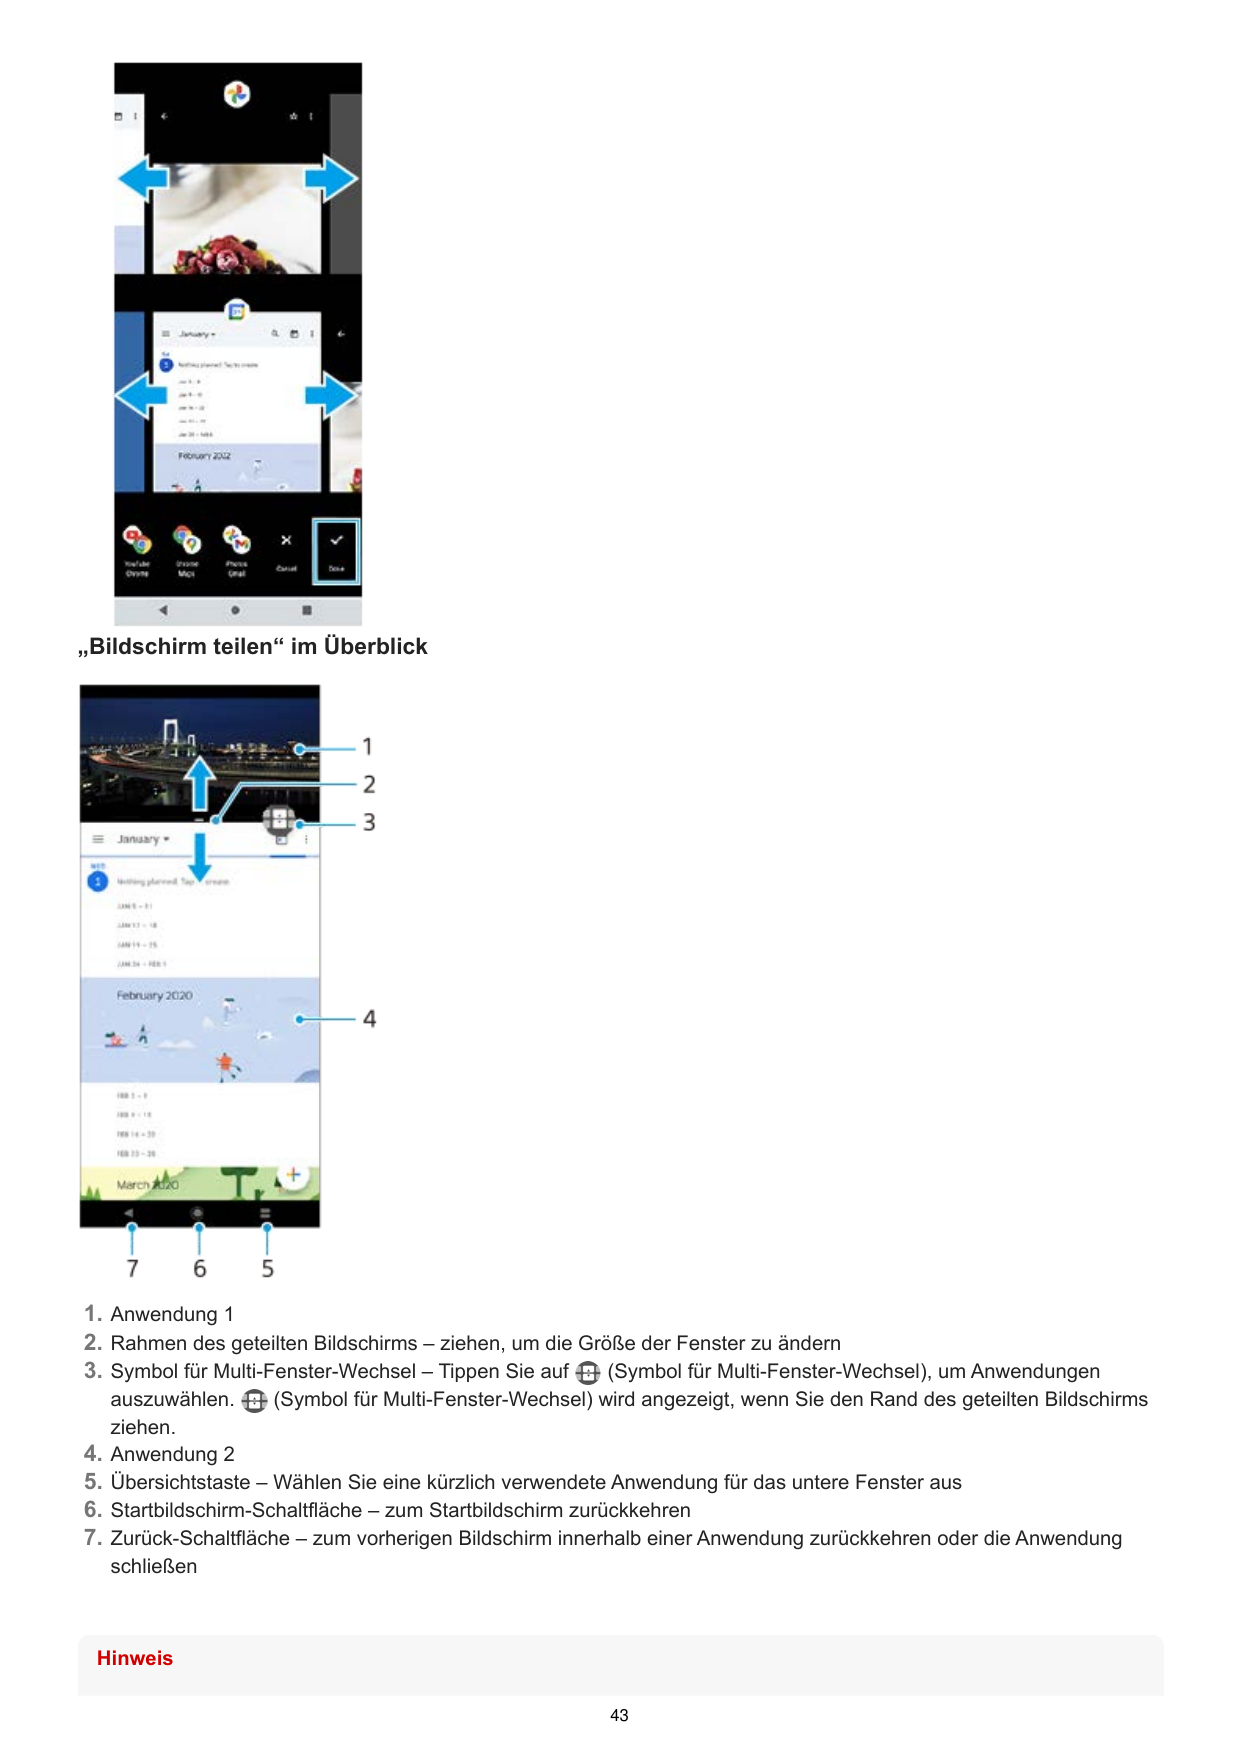 „Bildschirm teilen“ im Überblick1. Anwendung 12. Rahmen des geteilten Bildschirms – ziehen, um die Größe der Fenster zu ändern(S